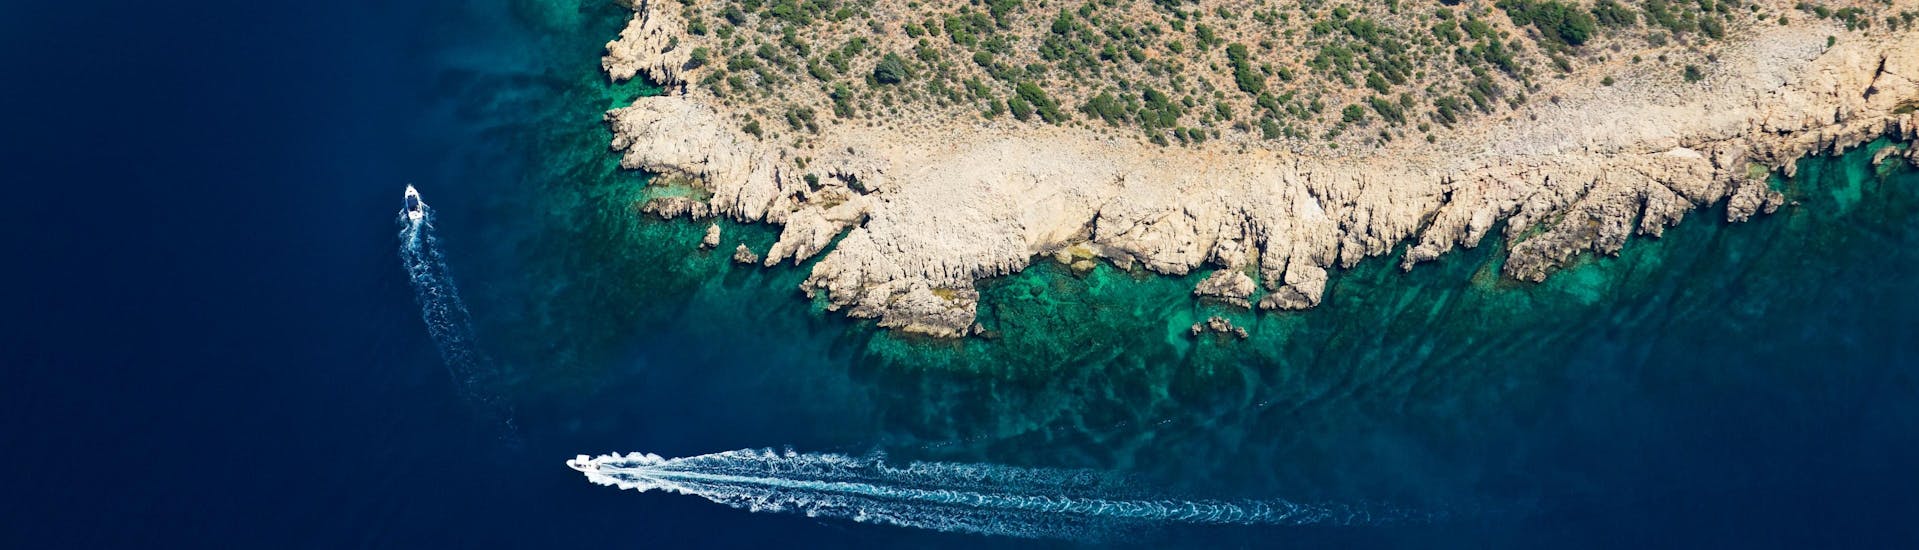 Vista aerea sulla costa di Plavnik, una delle destinazioni che si possono visitare con una gita in barca da Krk.